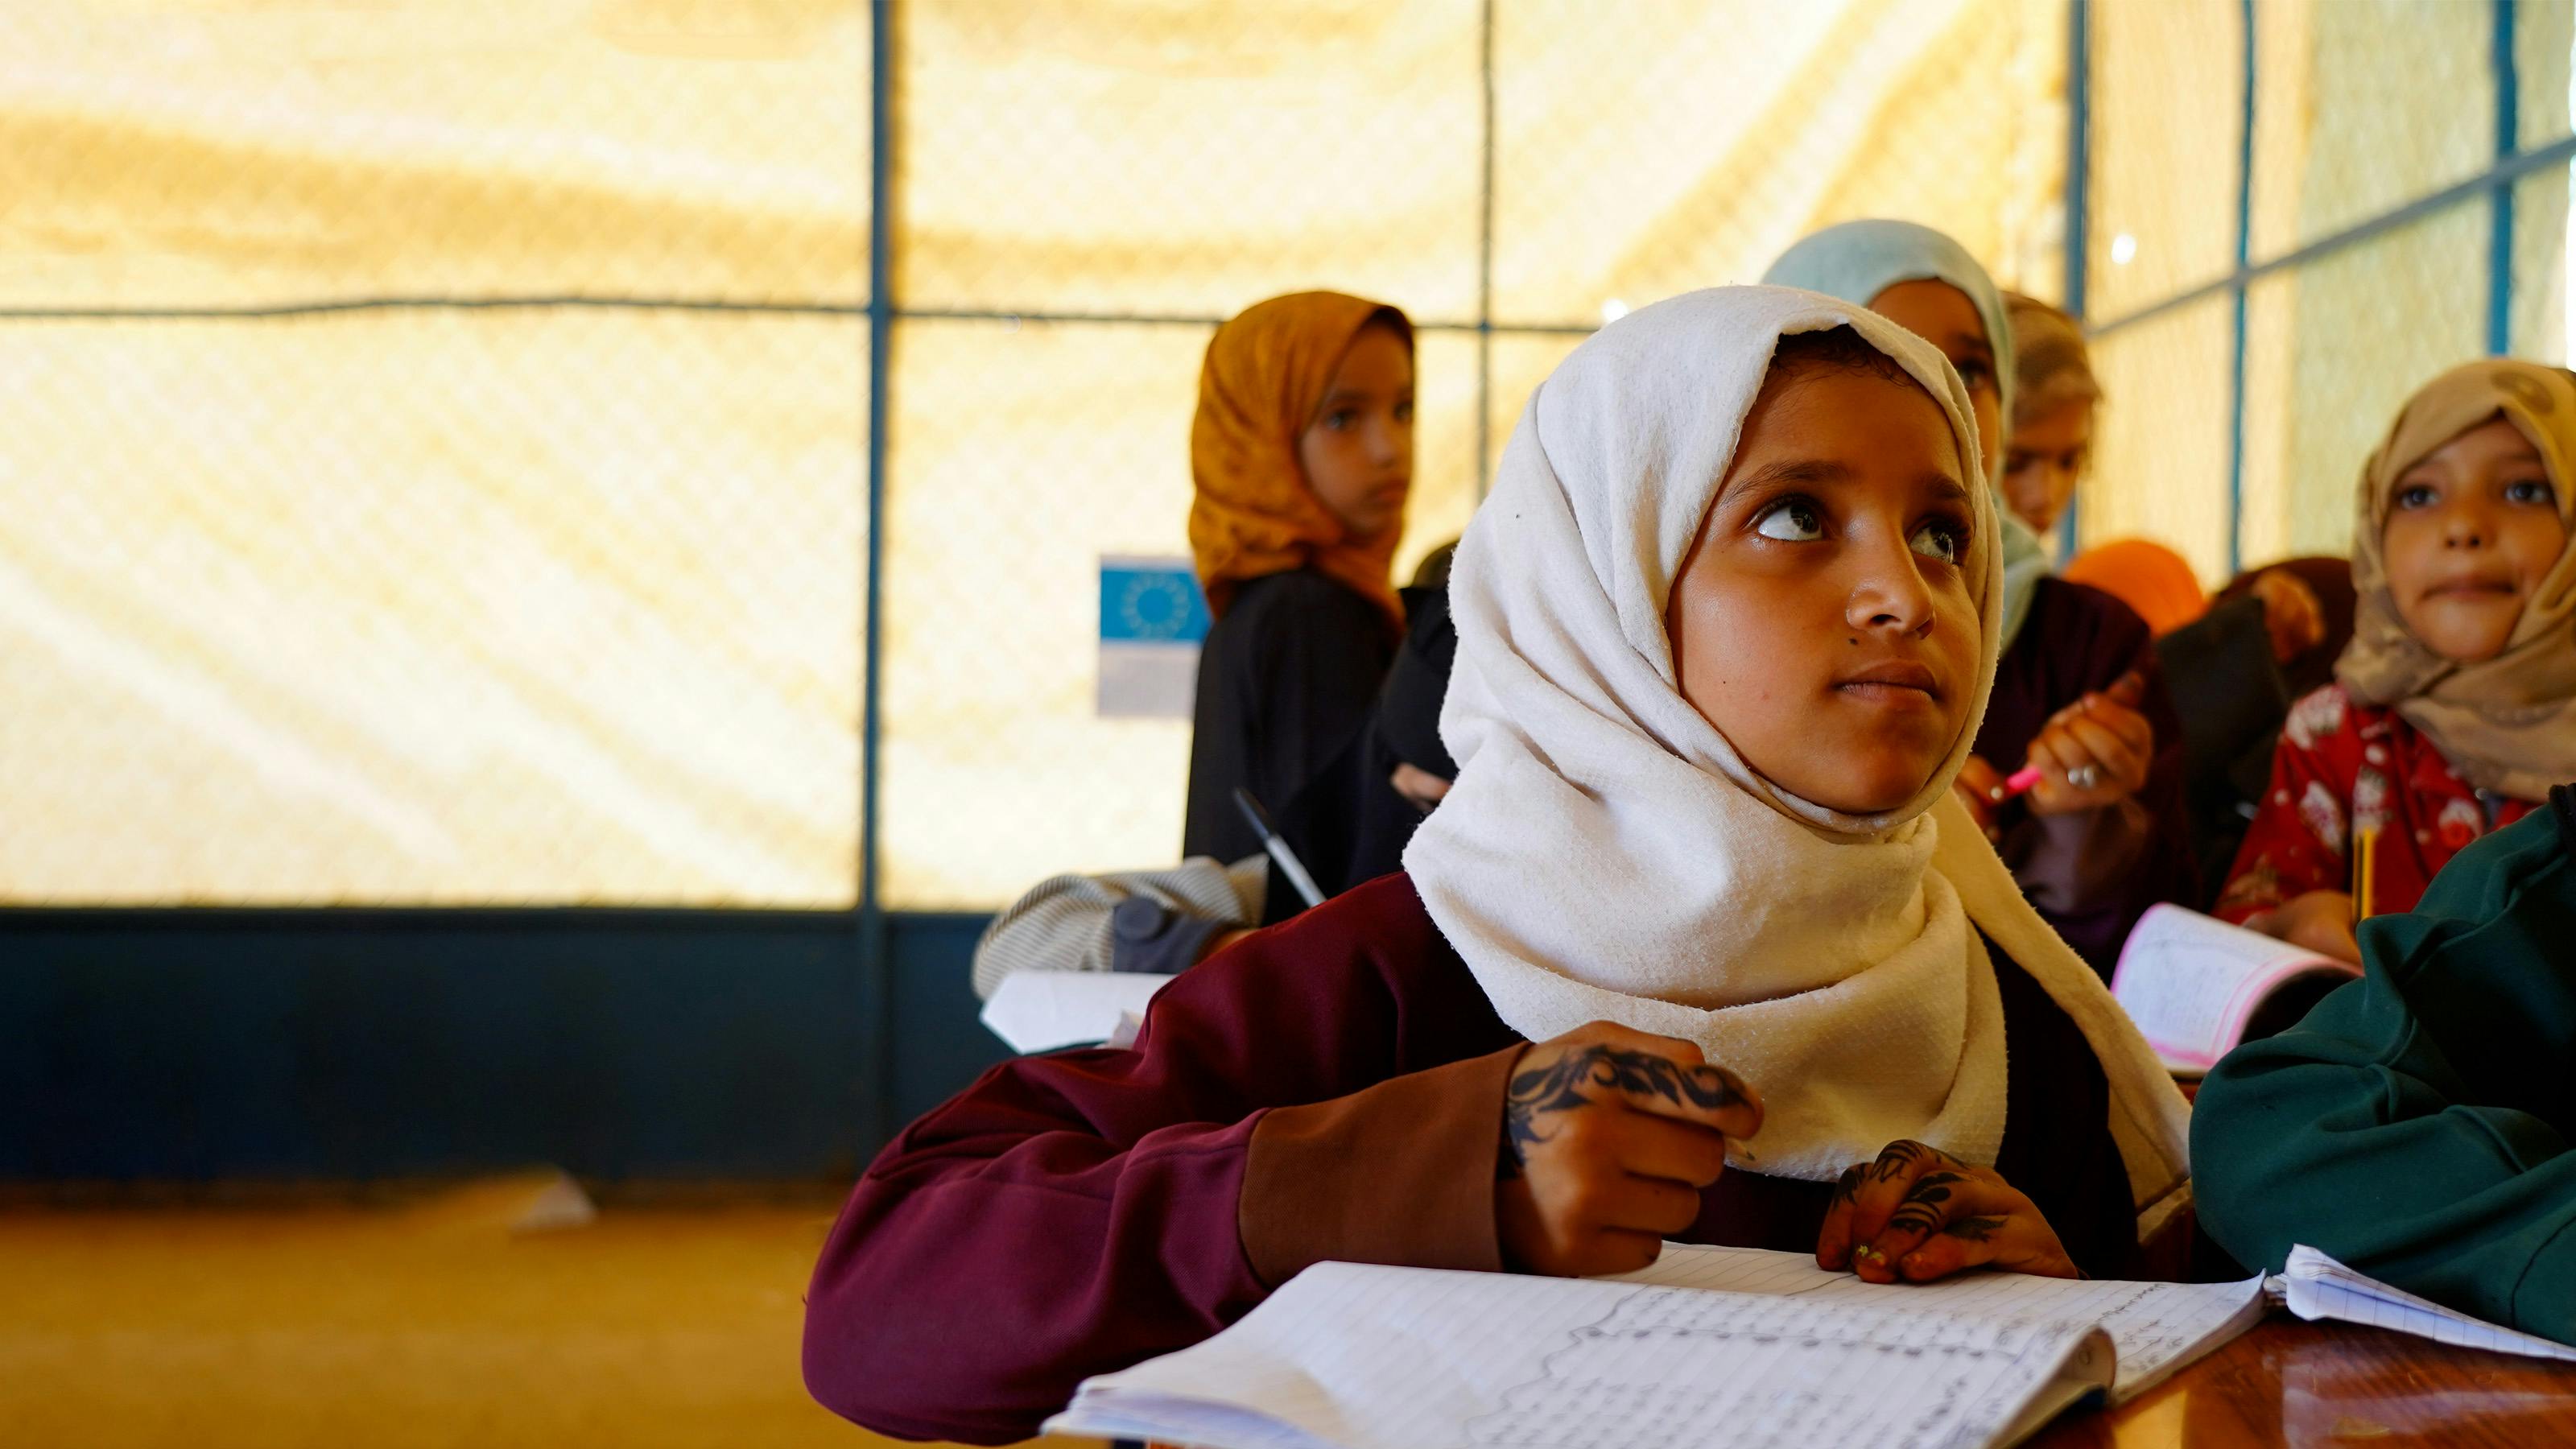 Bambini in classe seguono lezioni di recupero nell'ambito del progetto ECHO, finanziato dall'UNICEF.  Ci troviamo nel campo per sfollati interni di Marib, Yemen.